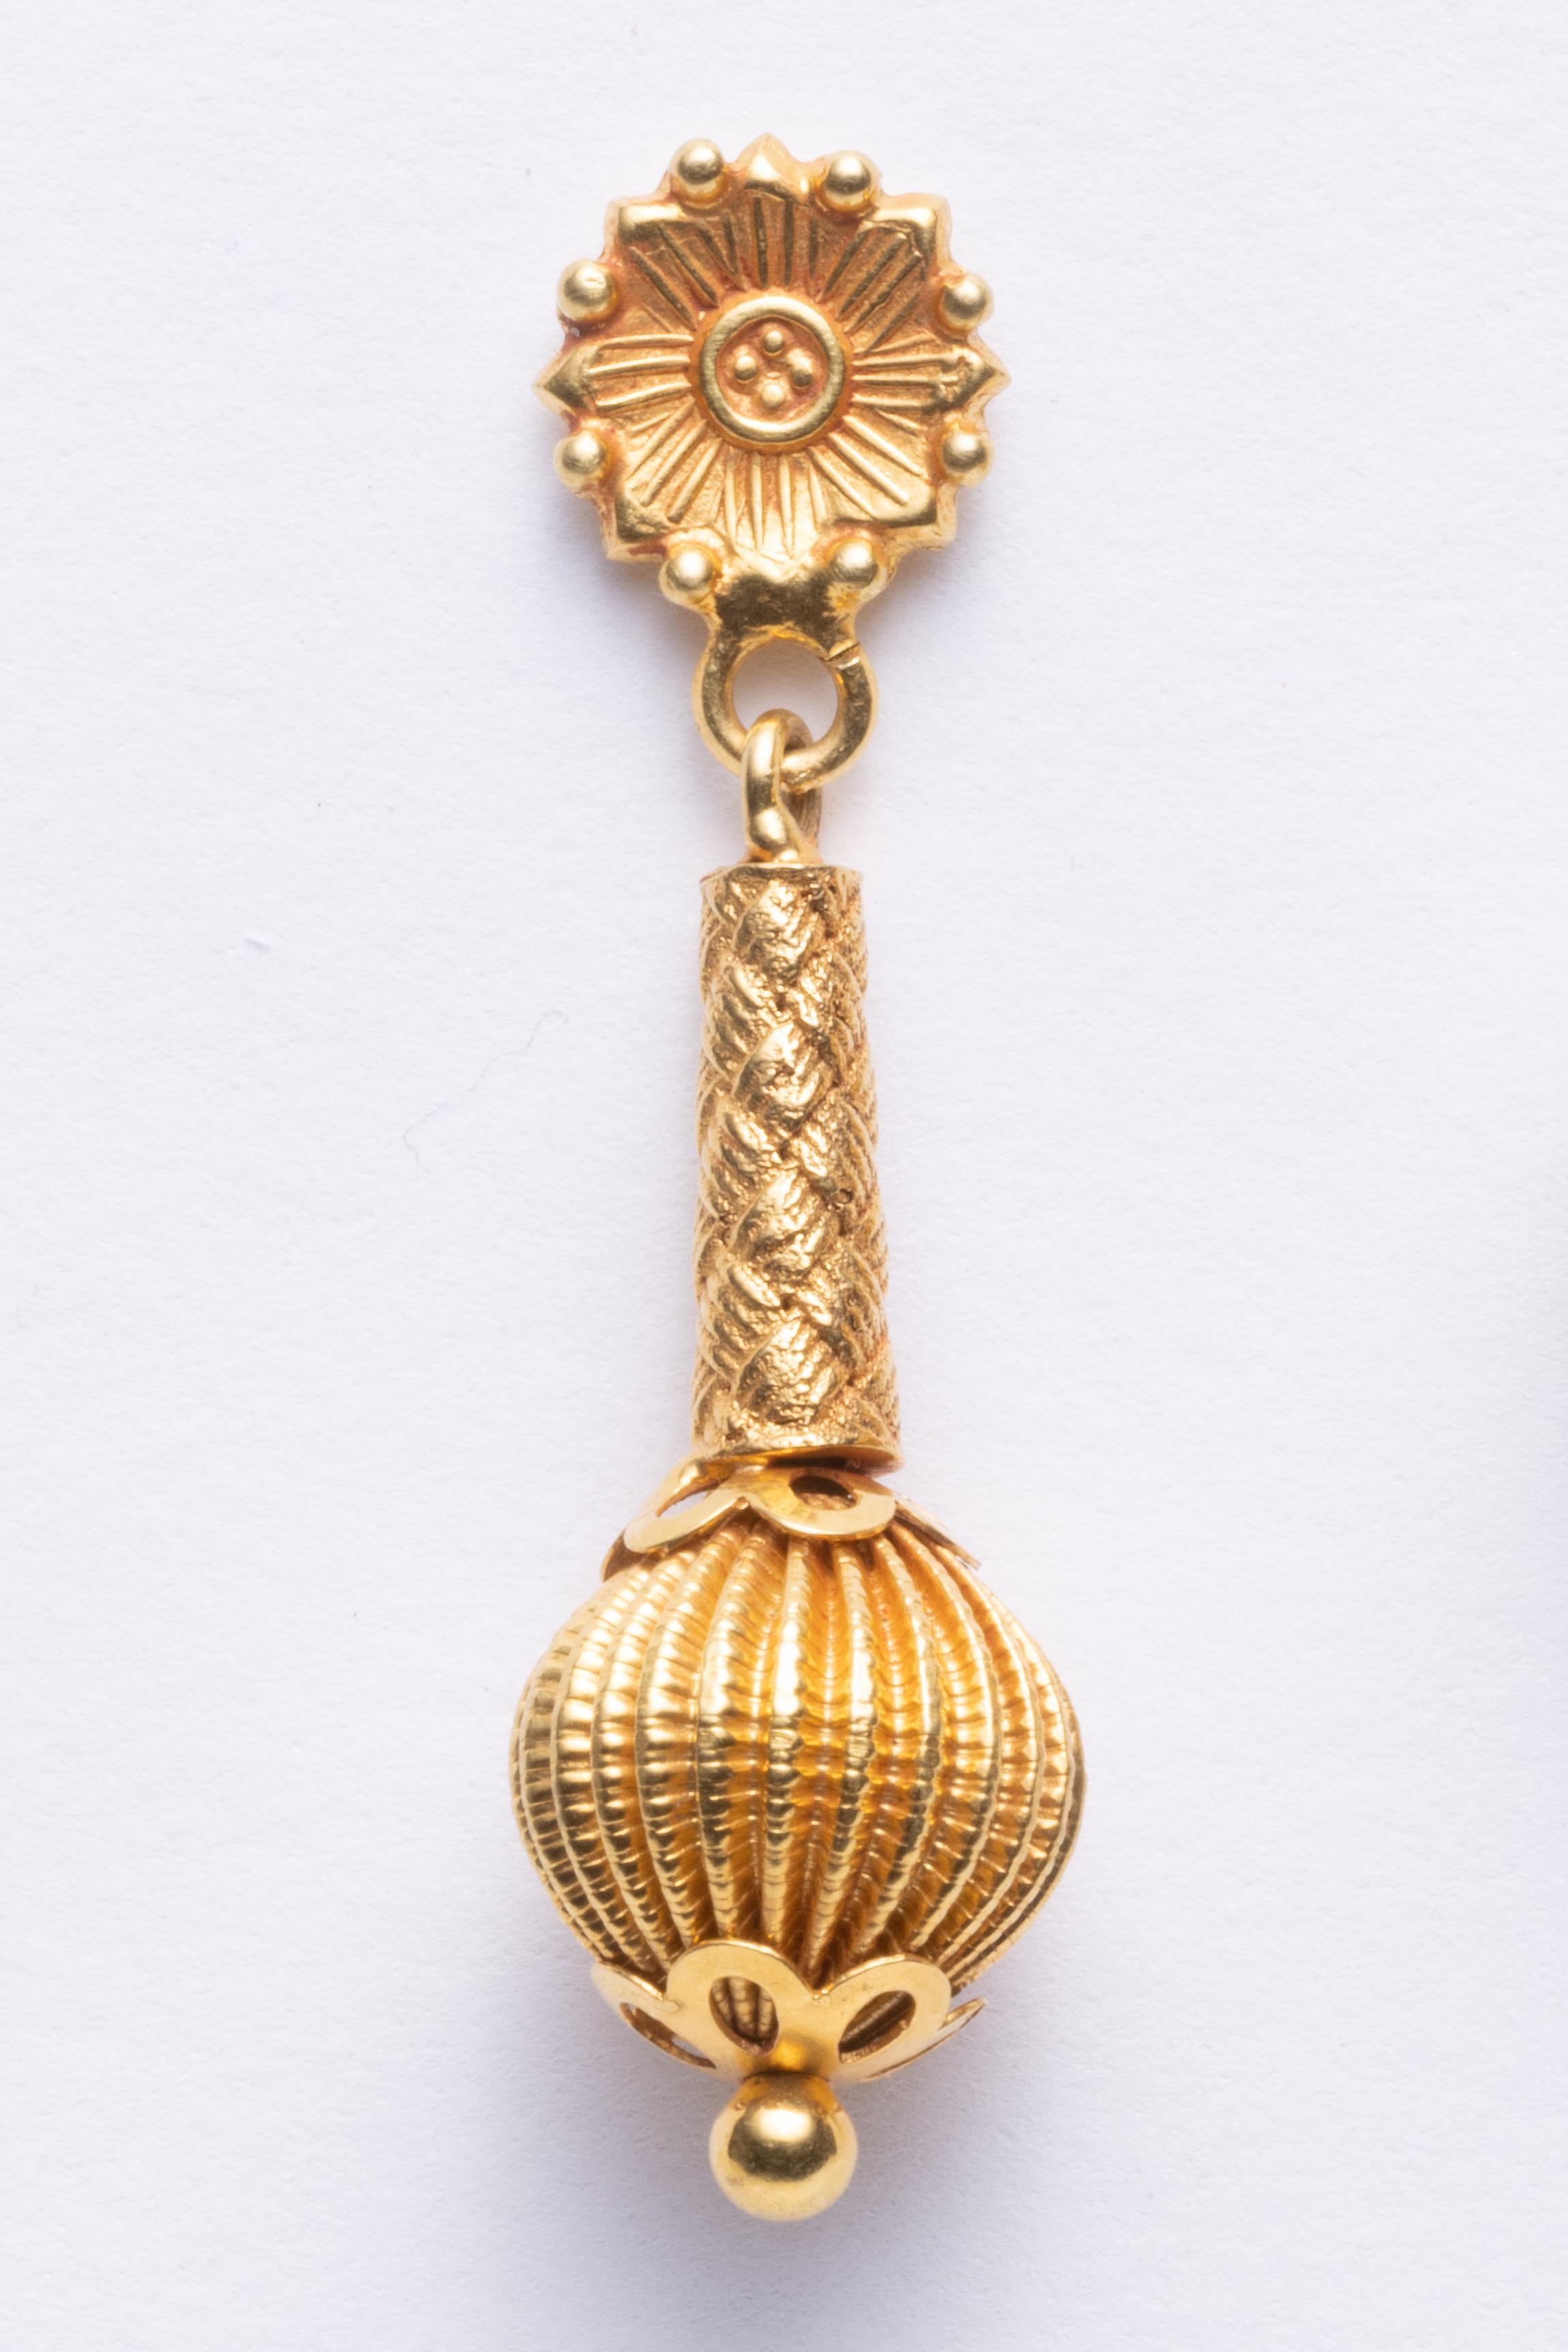 Ein Paar fein gearbeitete Ohrringe aus 22-karätigem Gold, die an einem Ohrring baumeln.  Postback für gepiercte Ohren.  Indisch